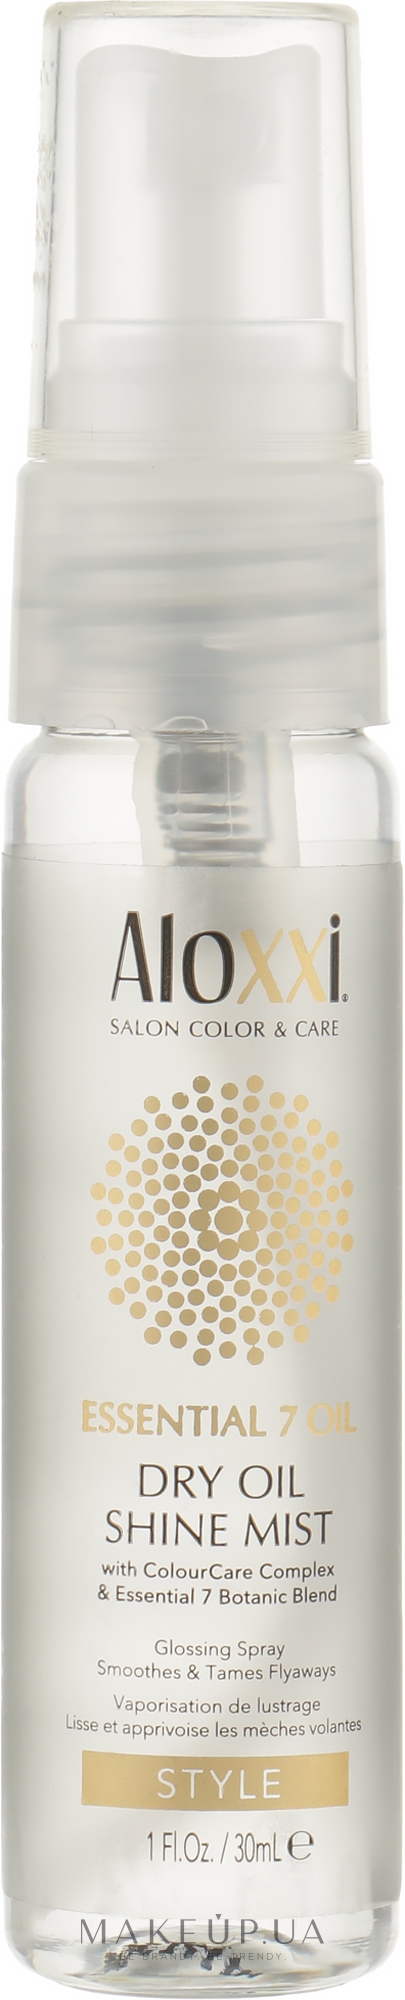 Суха спрей-олія для волосся - Aloxxi Essential 7 Oil Dry Oil Shine Mist — фото 30ml